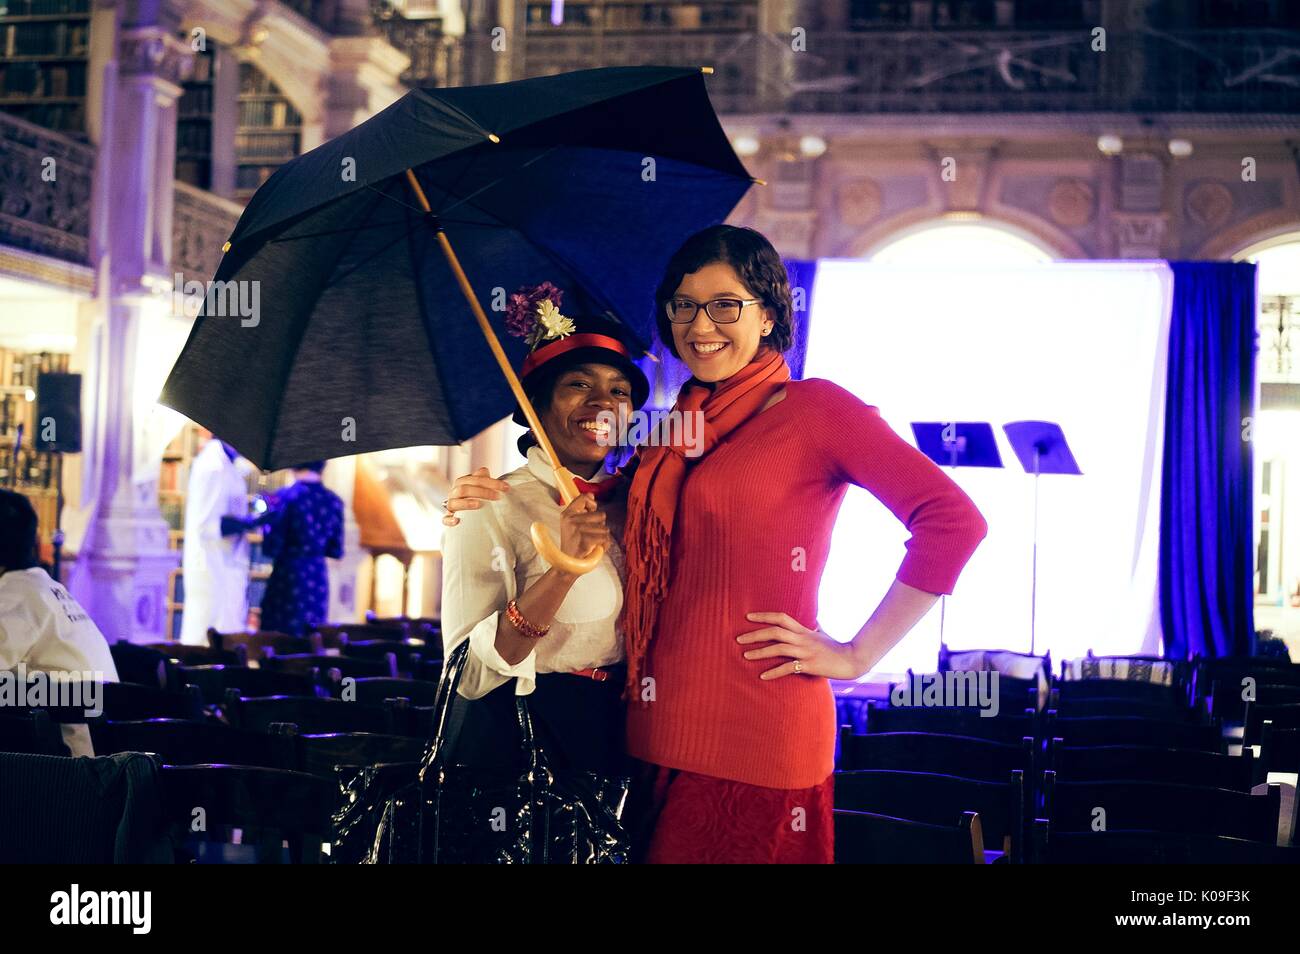 Zwei weibliche Studenten; der Student auf der linken Seite trägt einen schwarzen und Red Hat und ein weißes Hemd mit einem roten bowtie, halten einen Regenschirm; der Kursteilnehmer auf der rechten Seite tragen alle Rot; lächelnd Mimik, Halloween in Peabody, 31. Oktober 2015. Mit freundlicher Genehmigung von Eric Chen. Stockfoto